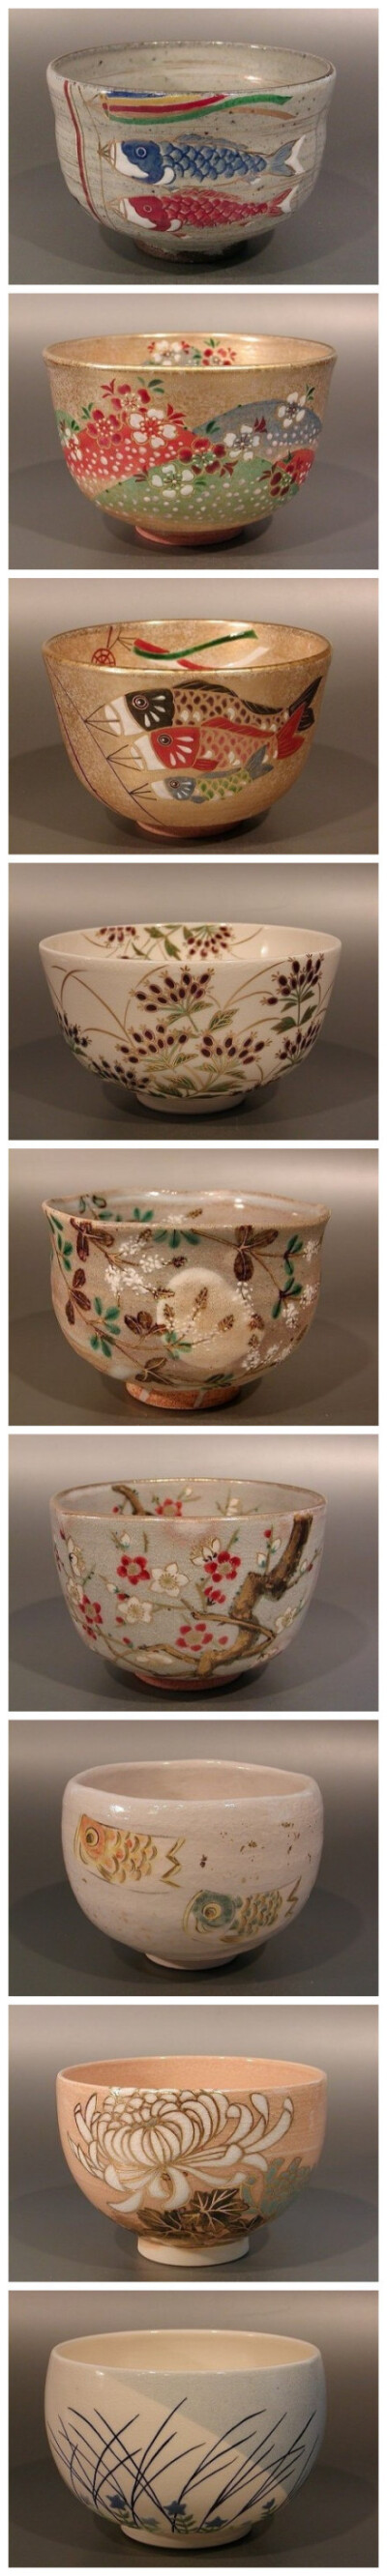 抹茶碗 , 京都陶瓷艺品,产自清水寺门前，所以有本称为“清水烧” [转]